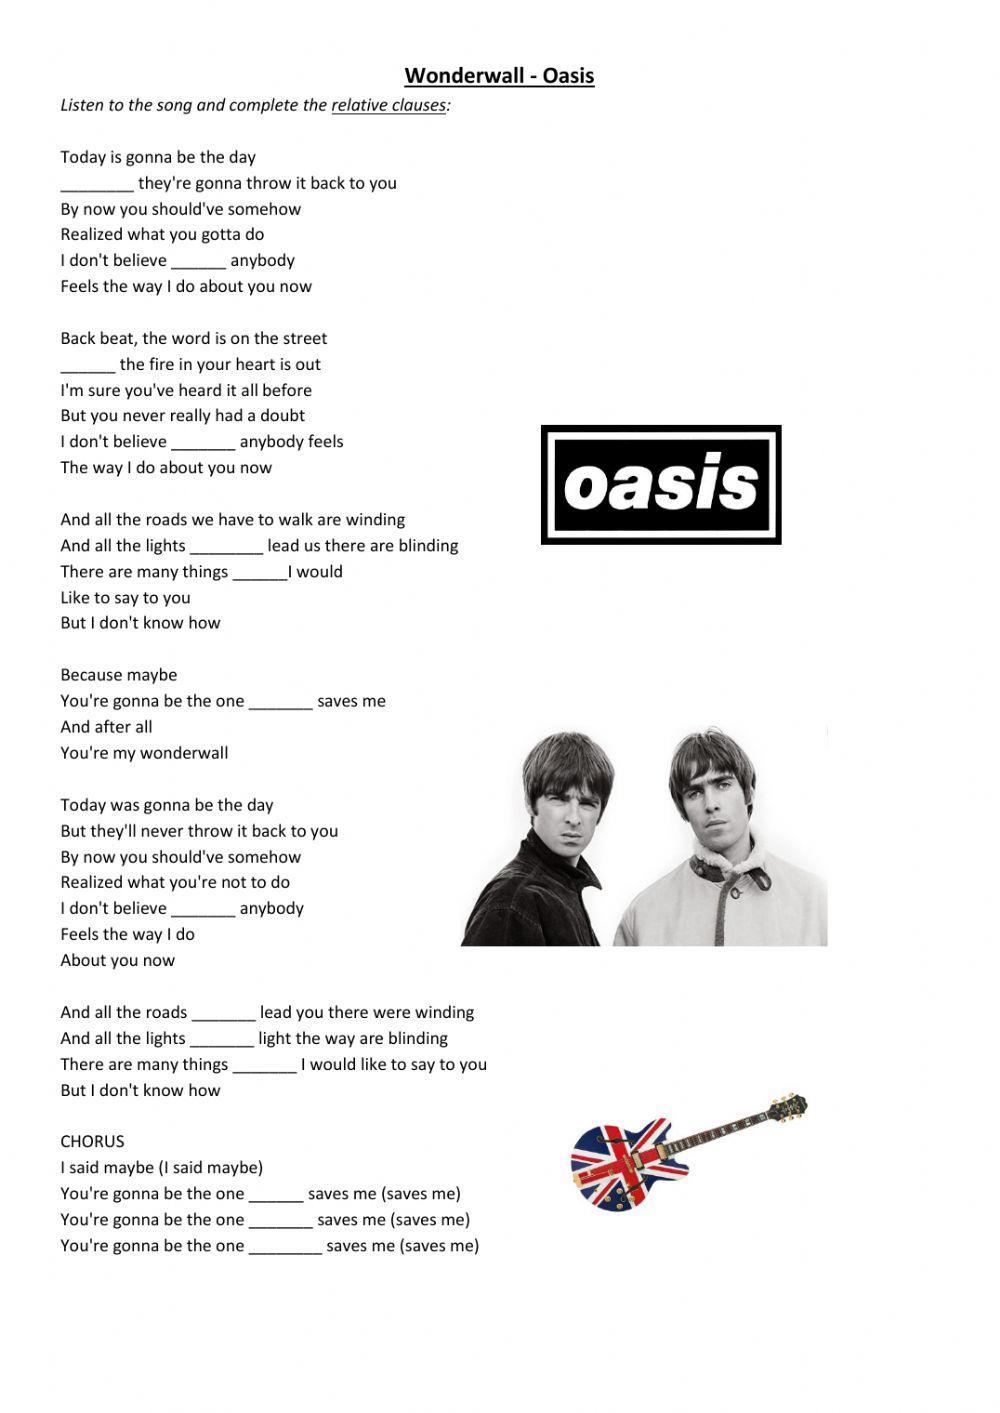 Wonderwall by Oasis - Relative clauses